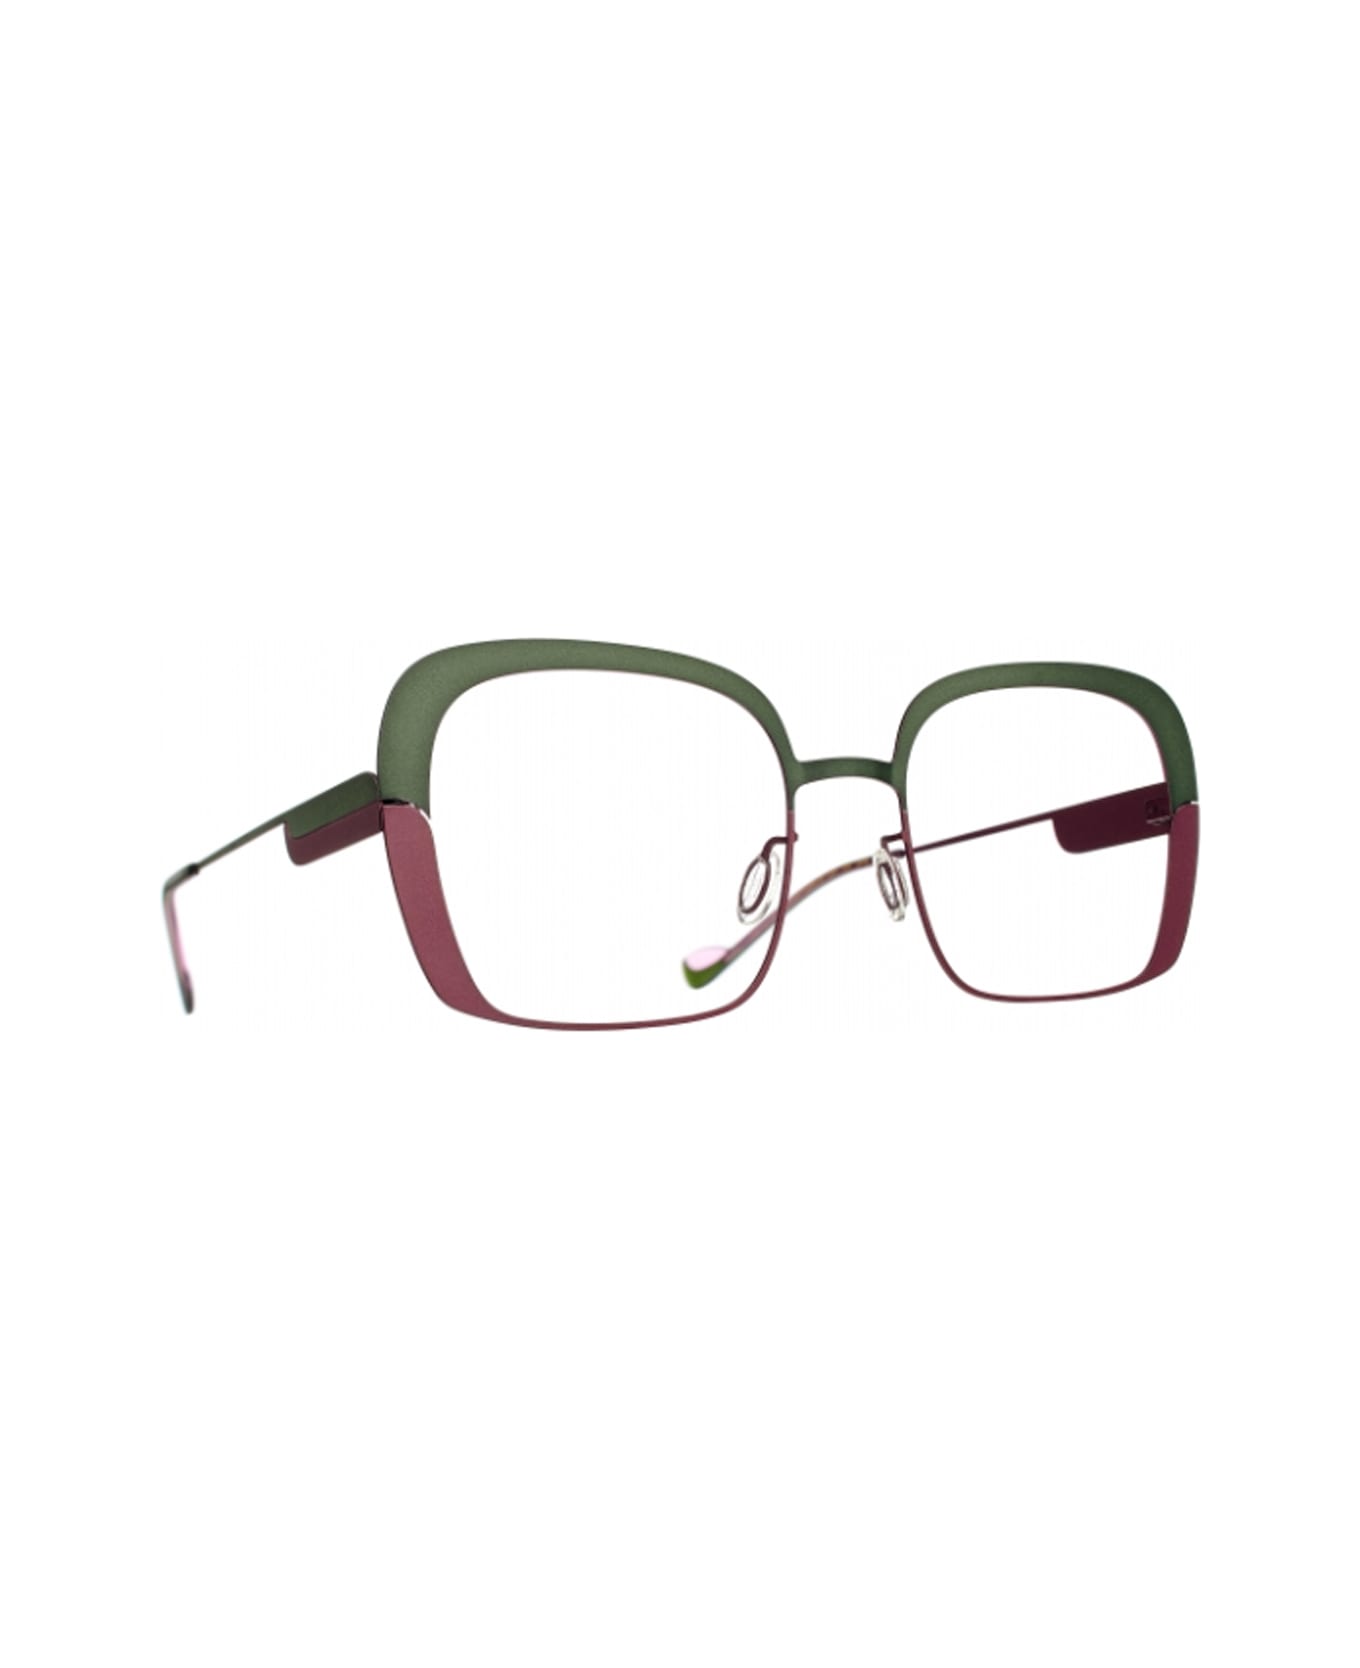 Caroline Abram Jane 256 Glasses - Verde アイウェア